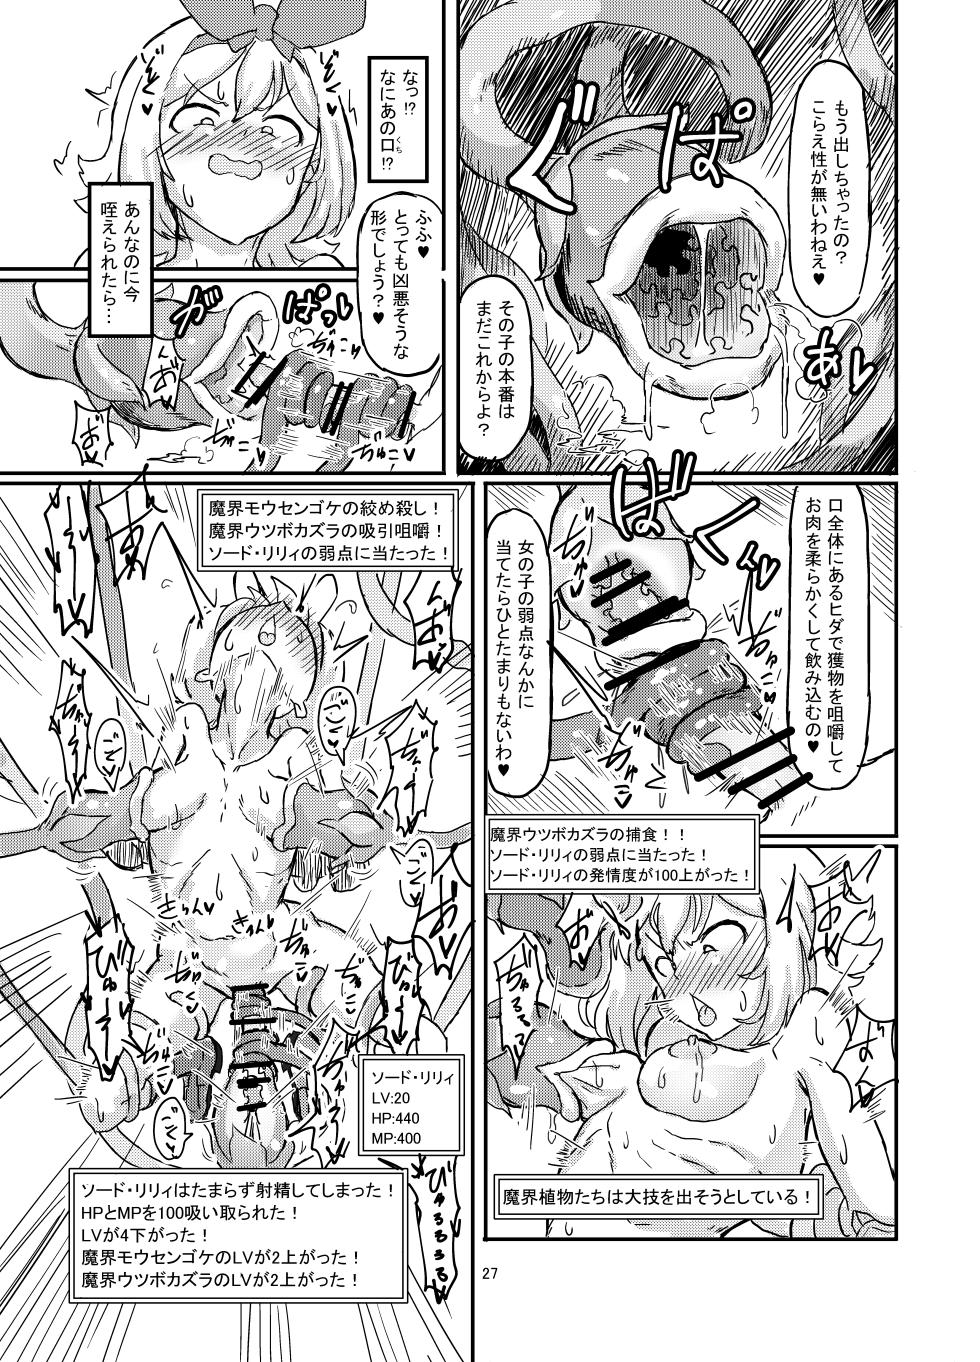 Shirokarasuya 2 - Page 28